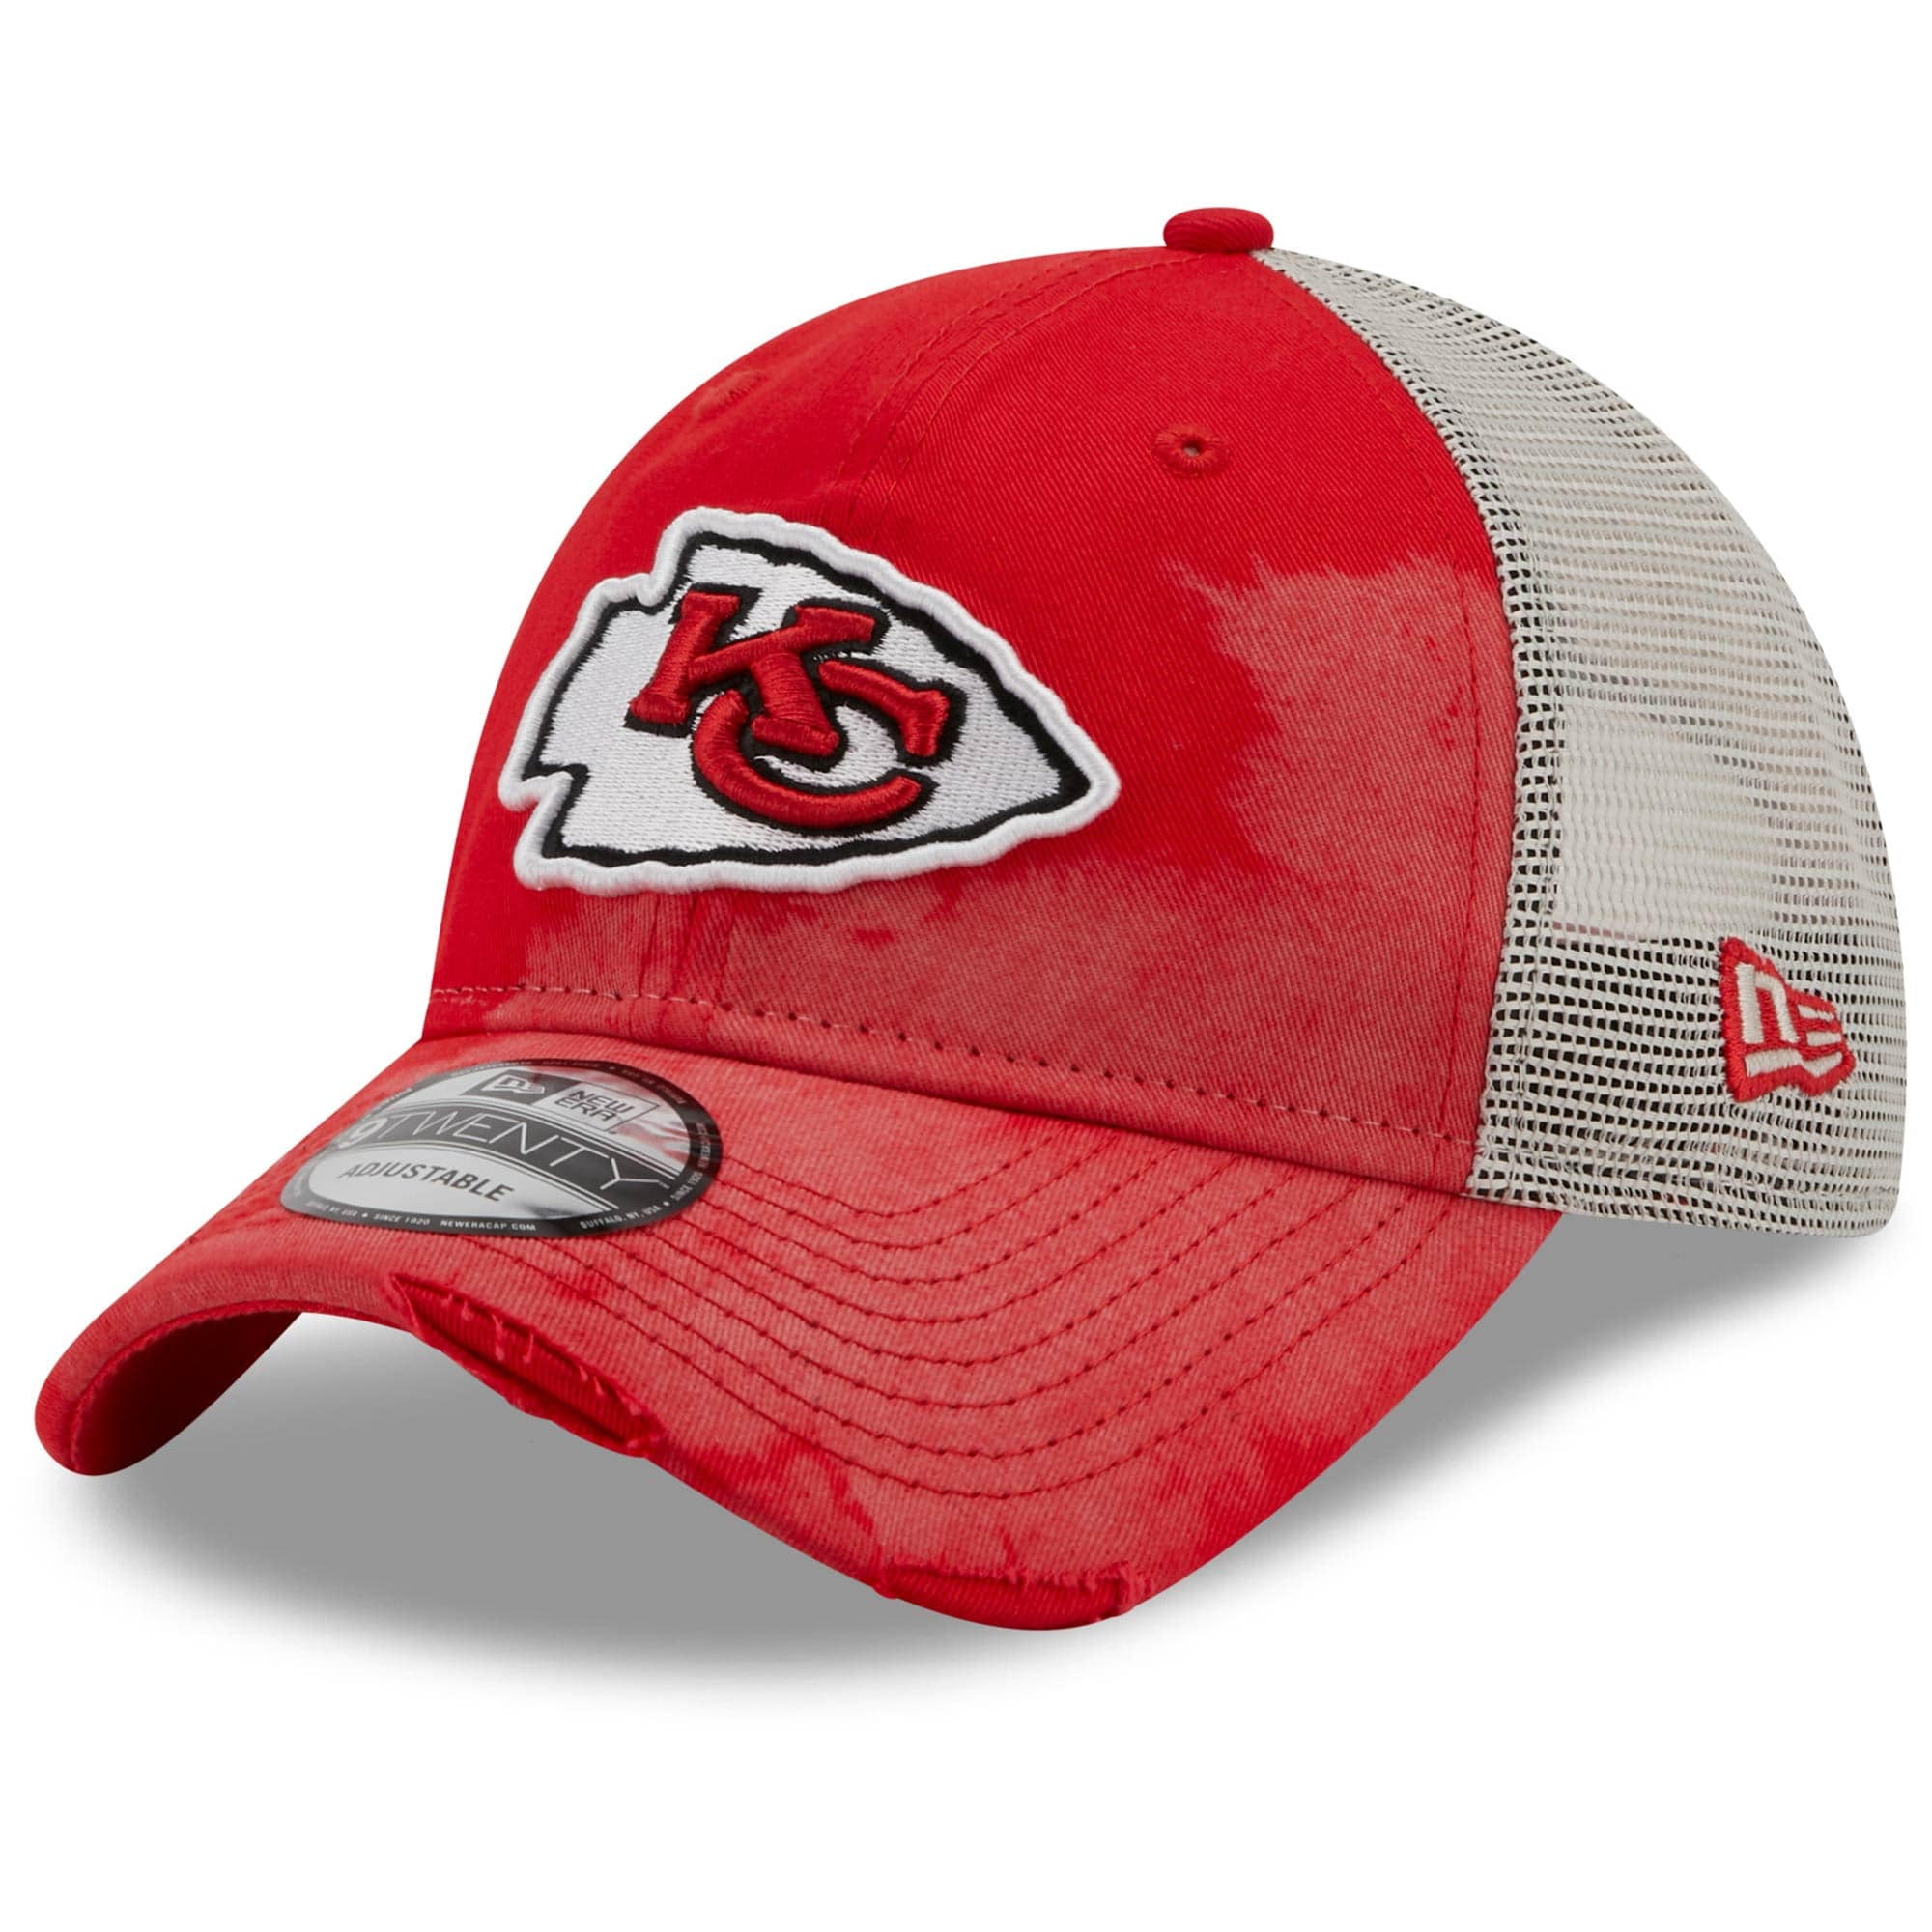 Kansas City Chiefs kids hats